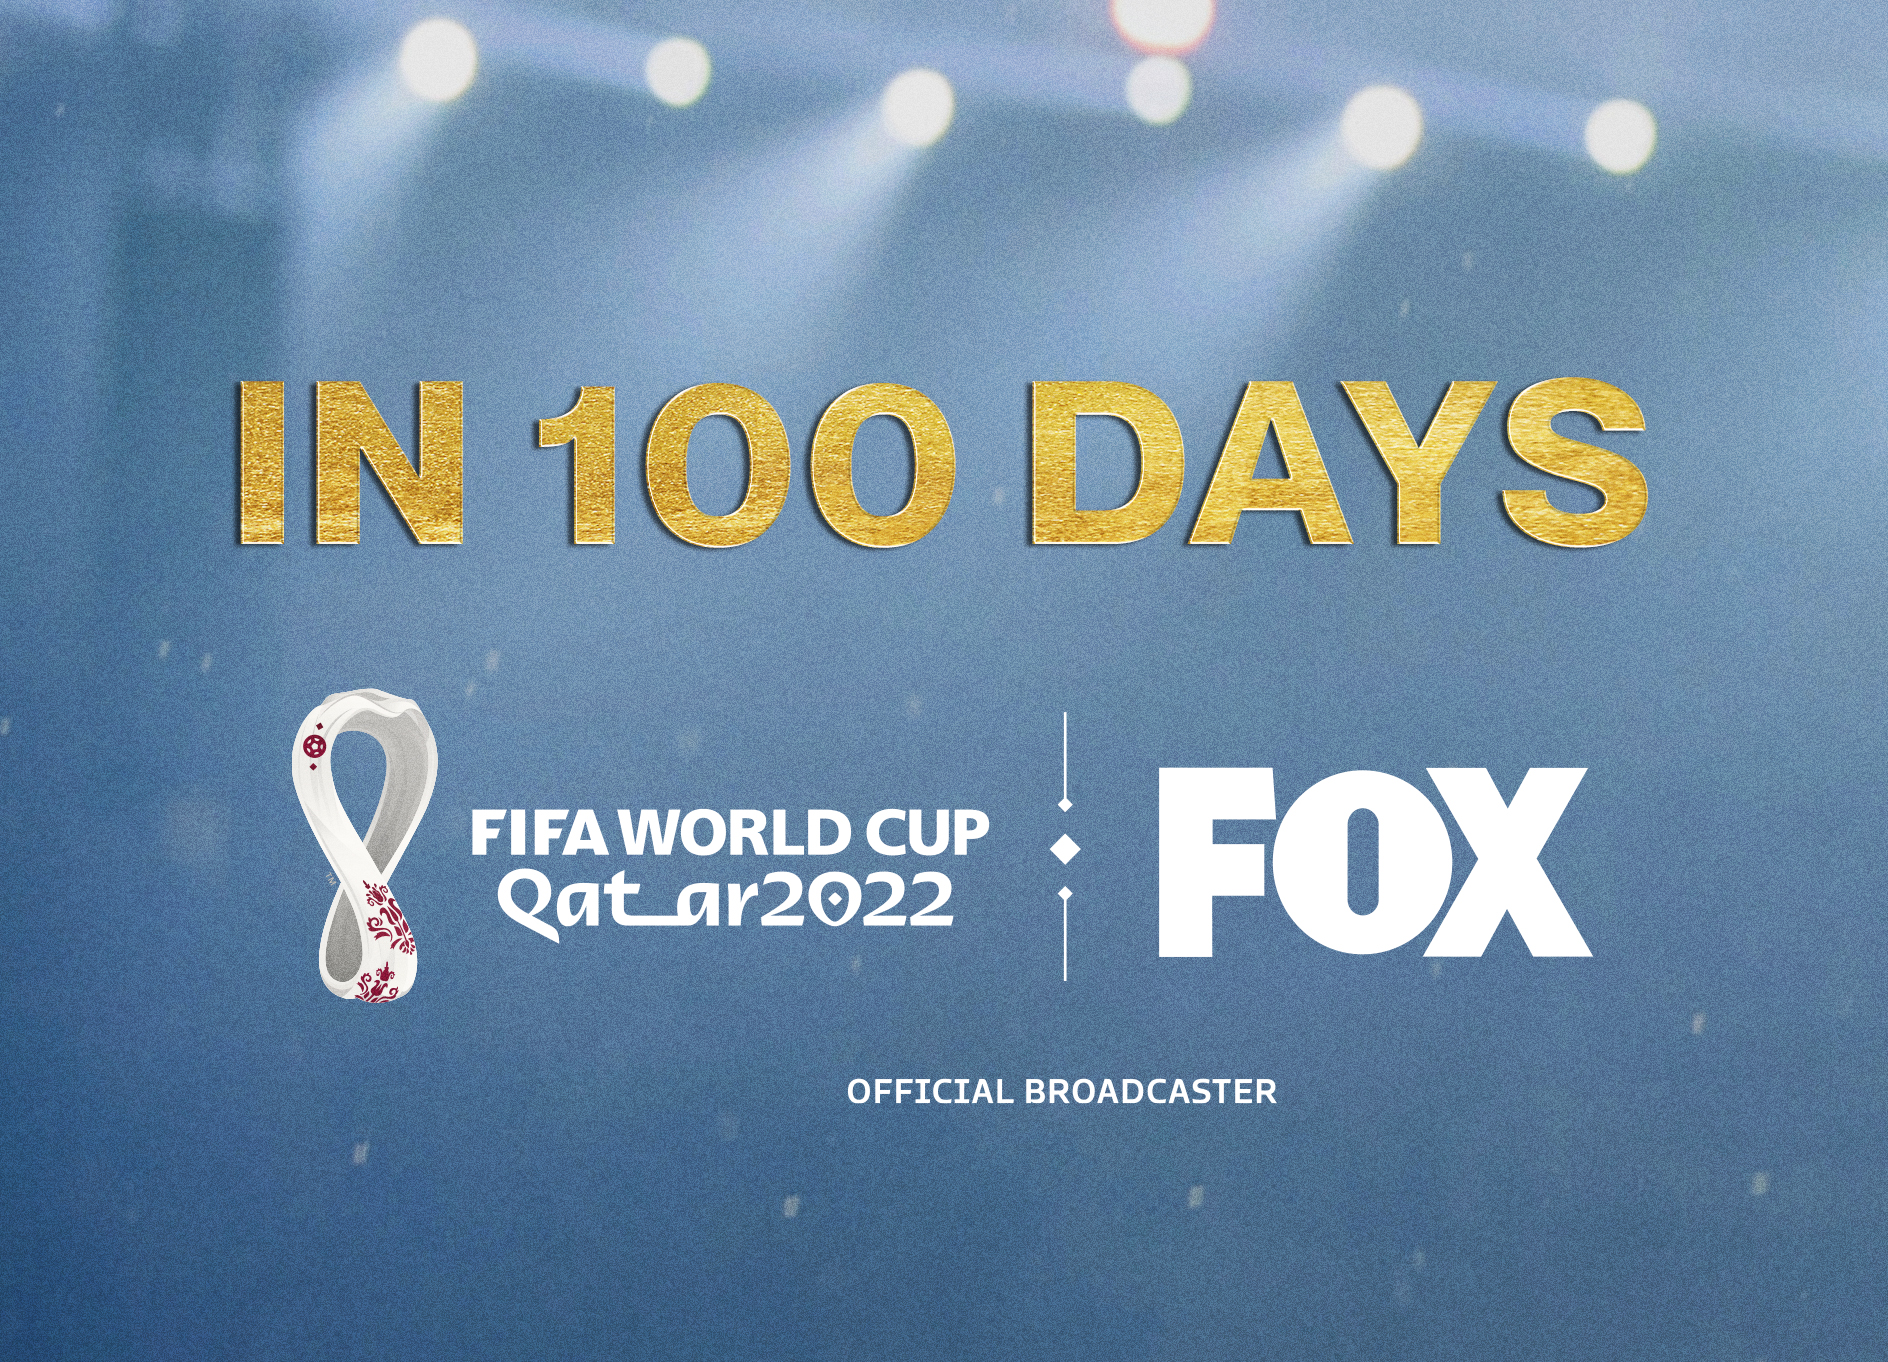 Đài truyền hình Fox sỡ hửu bản quyền World Cup 2022